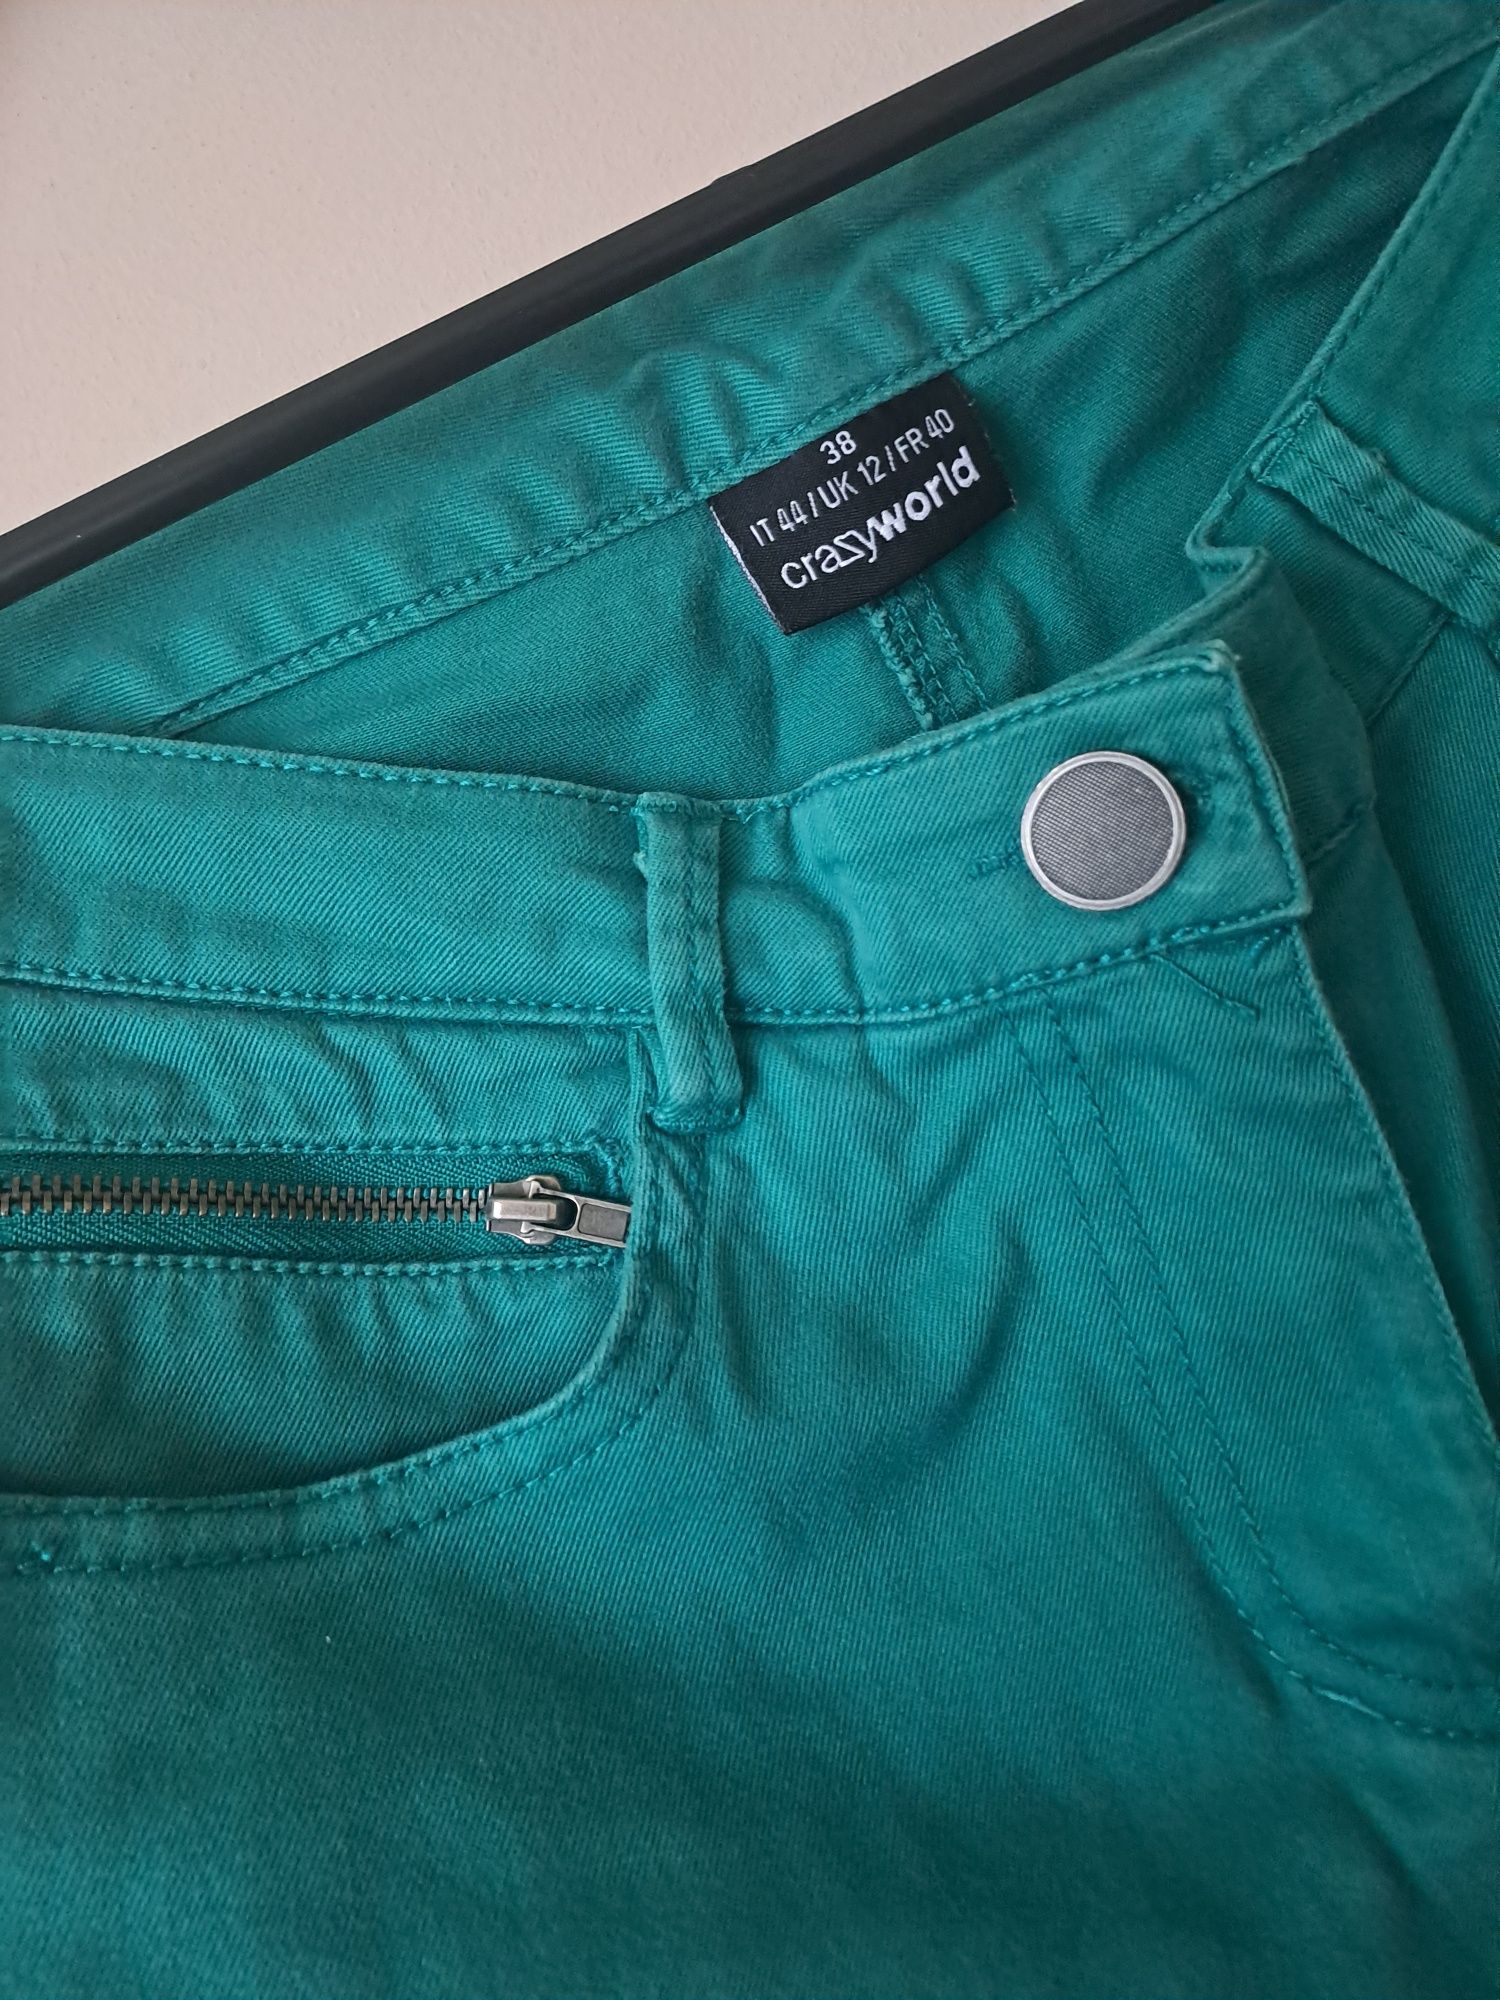 Spodnie damskie rurki zielone rozmiar 38